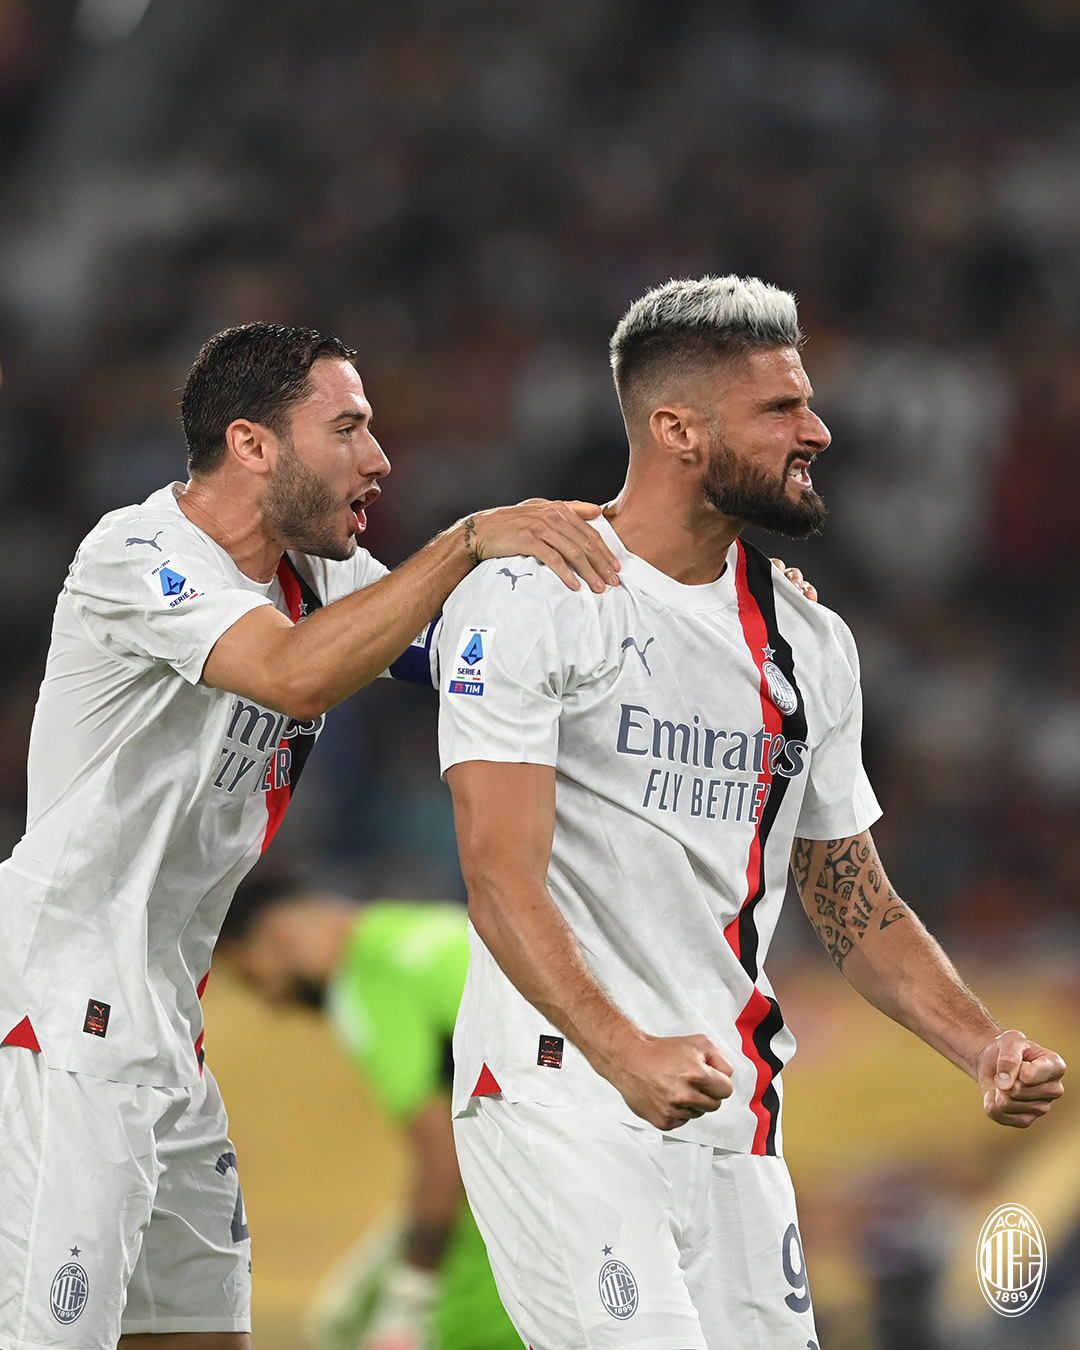 AC Milan on X: Our perfect start continues: read tonight's match report 👉   🗞️ A punteggio pieno alla sosta: leggi il report  della vittoria sulla Roma 👉  🗞️ #RomaMilan  #SempreMilan